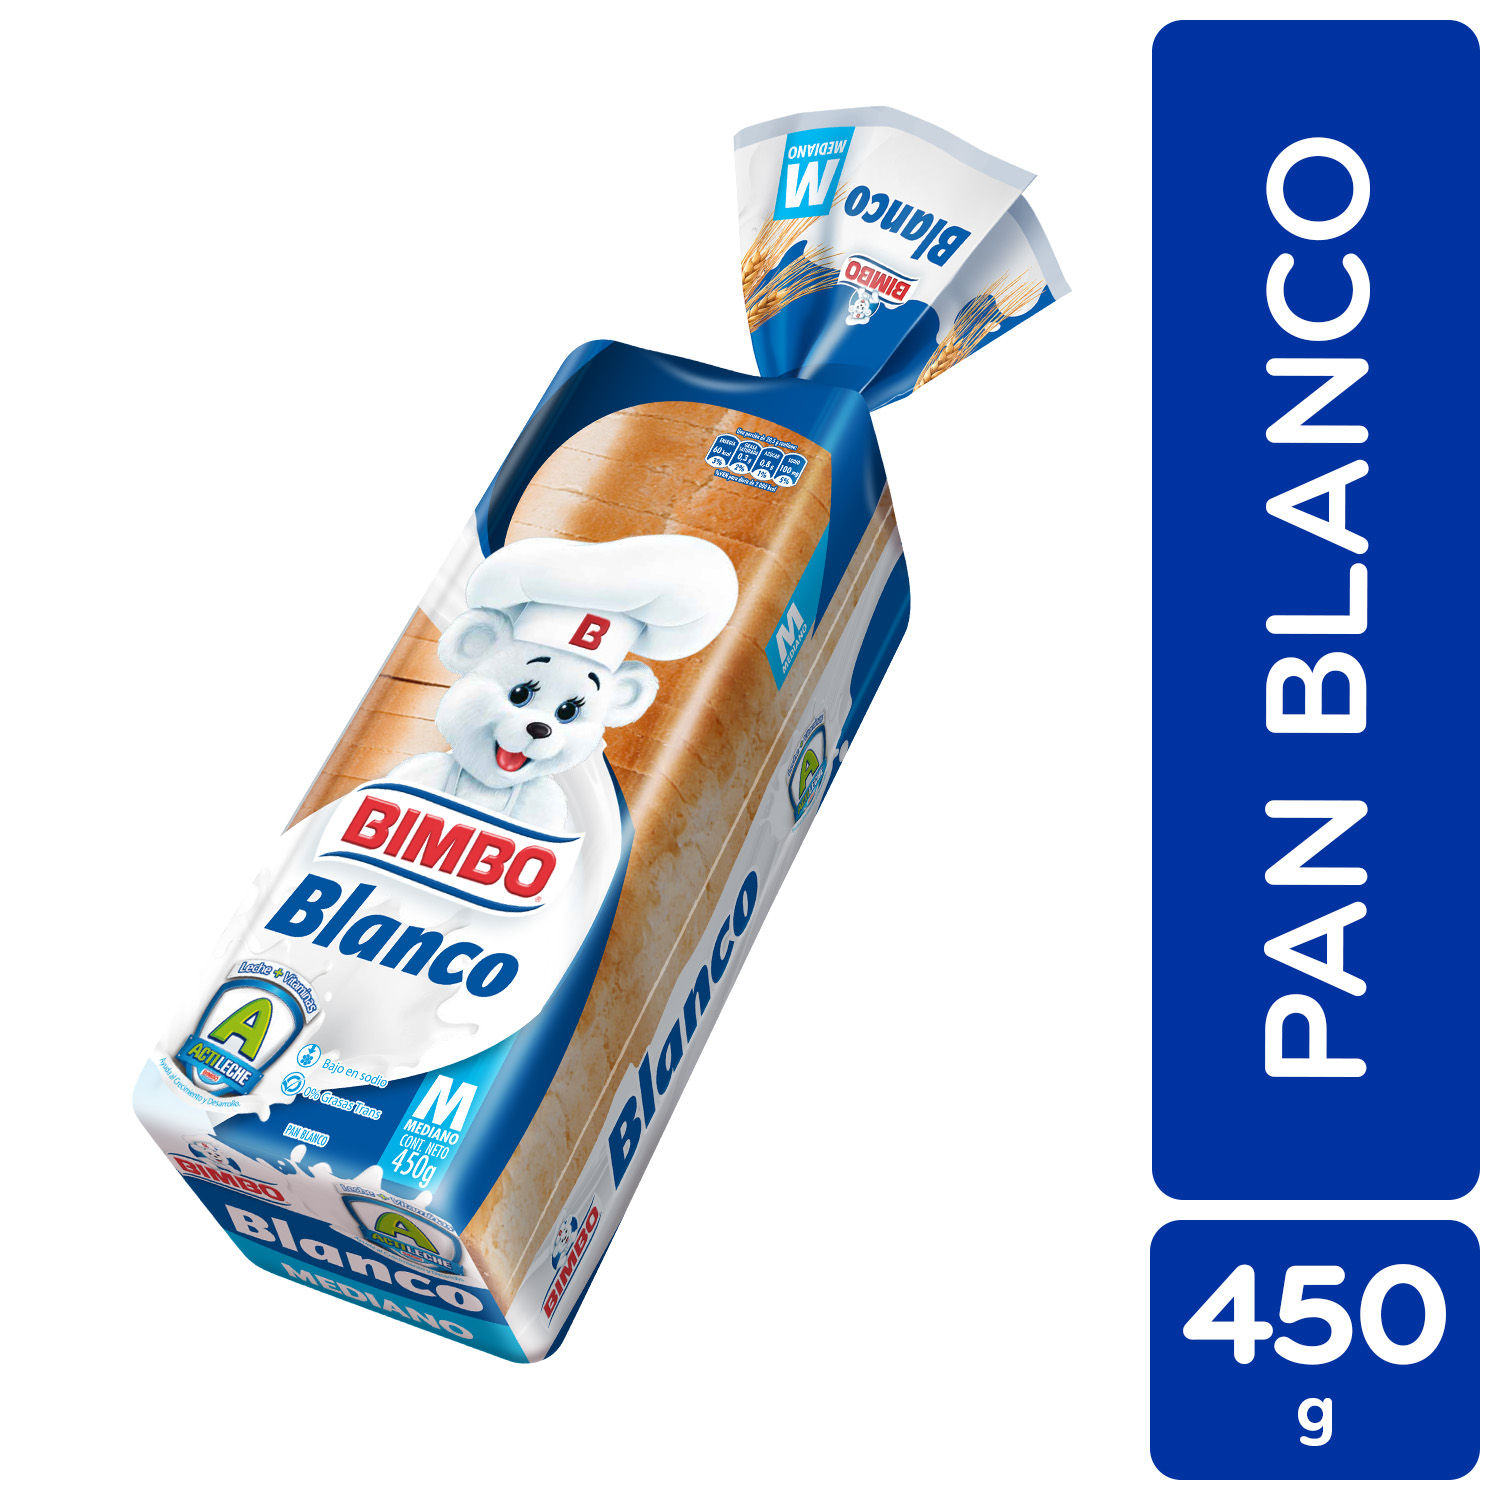 Pan Empacado Blanco Mediano Bimbo Paquete 450 G